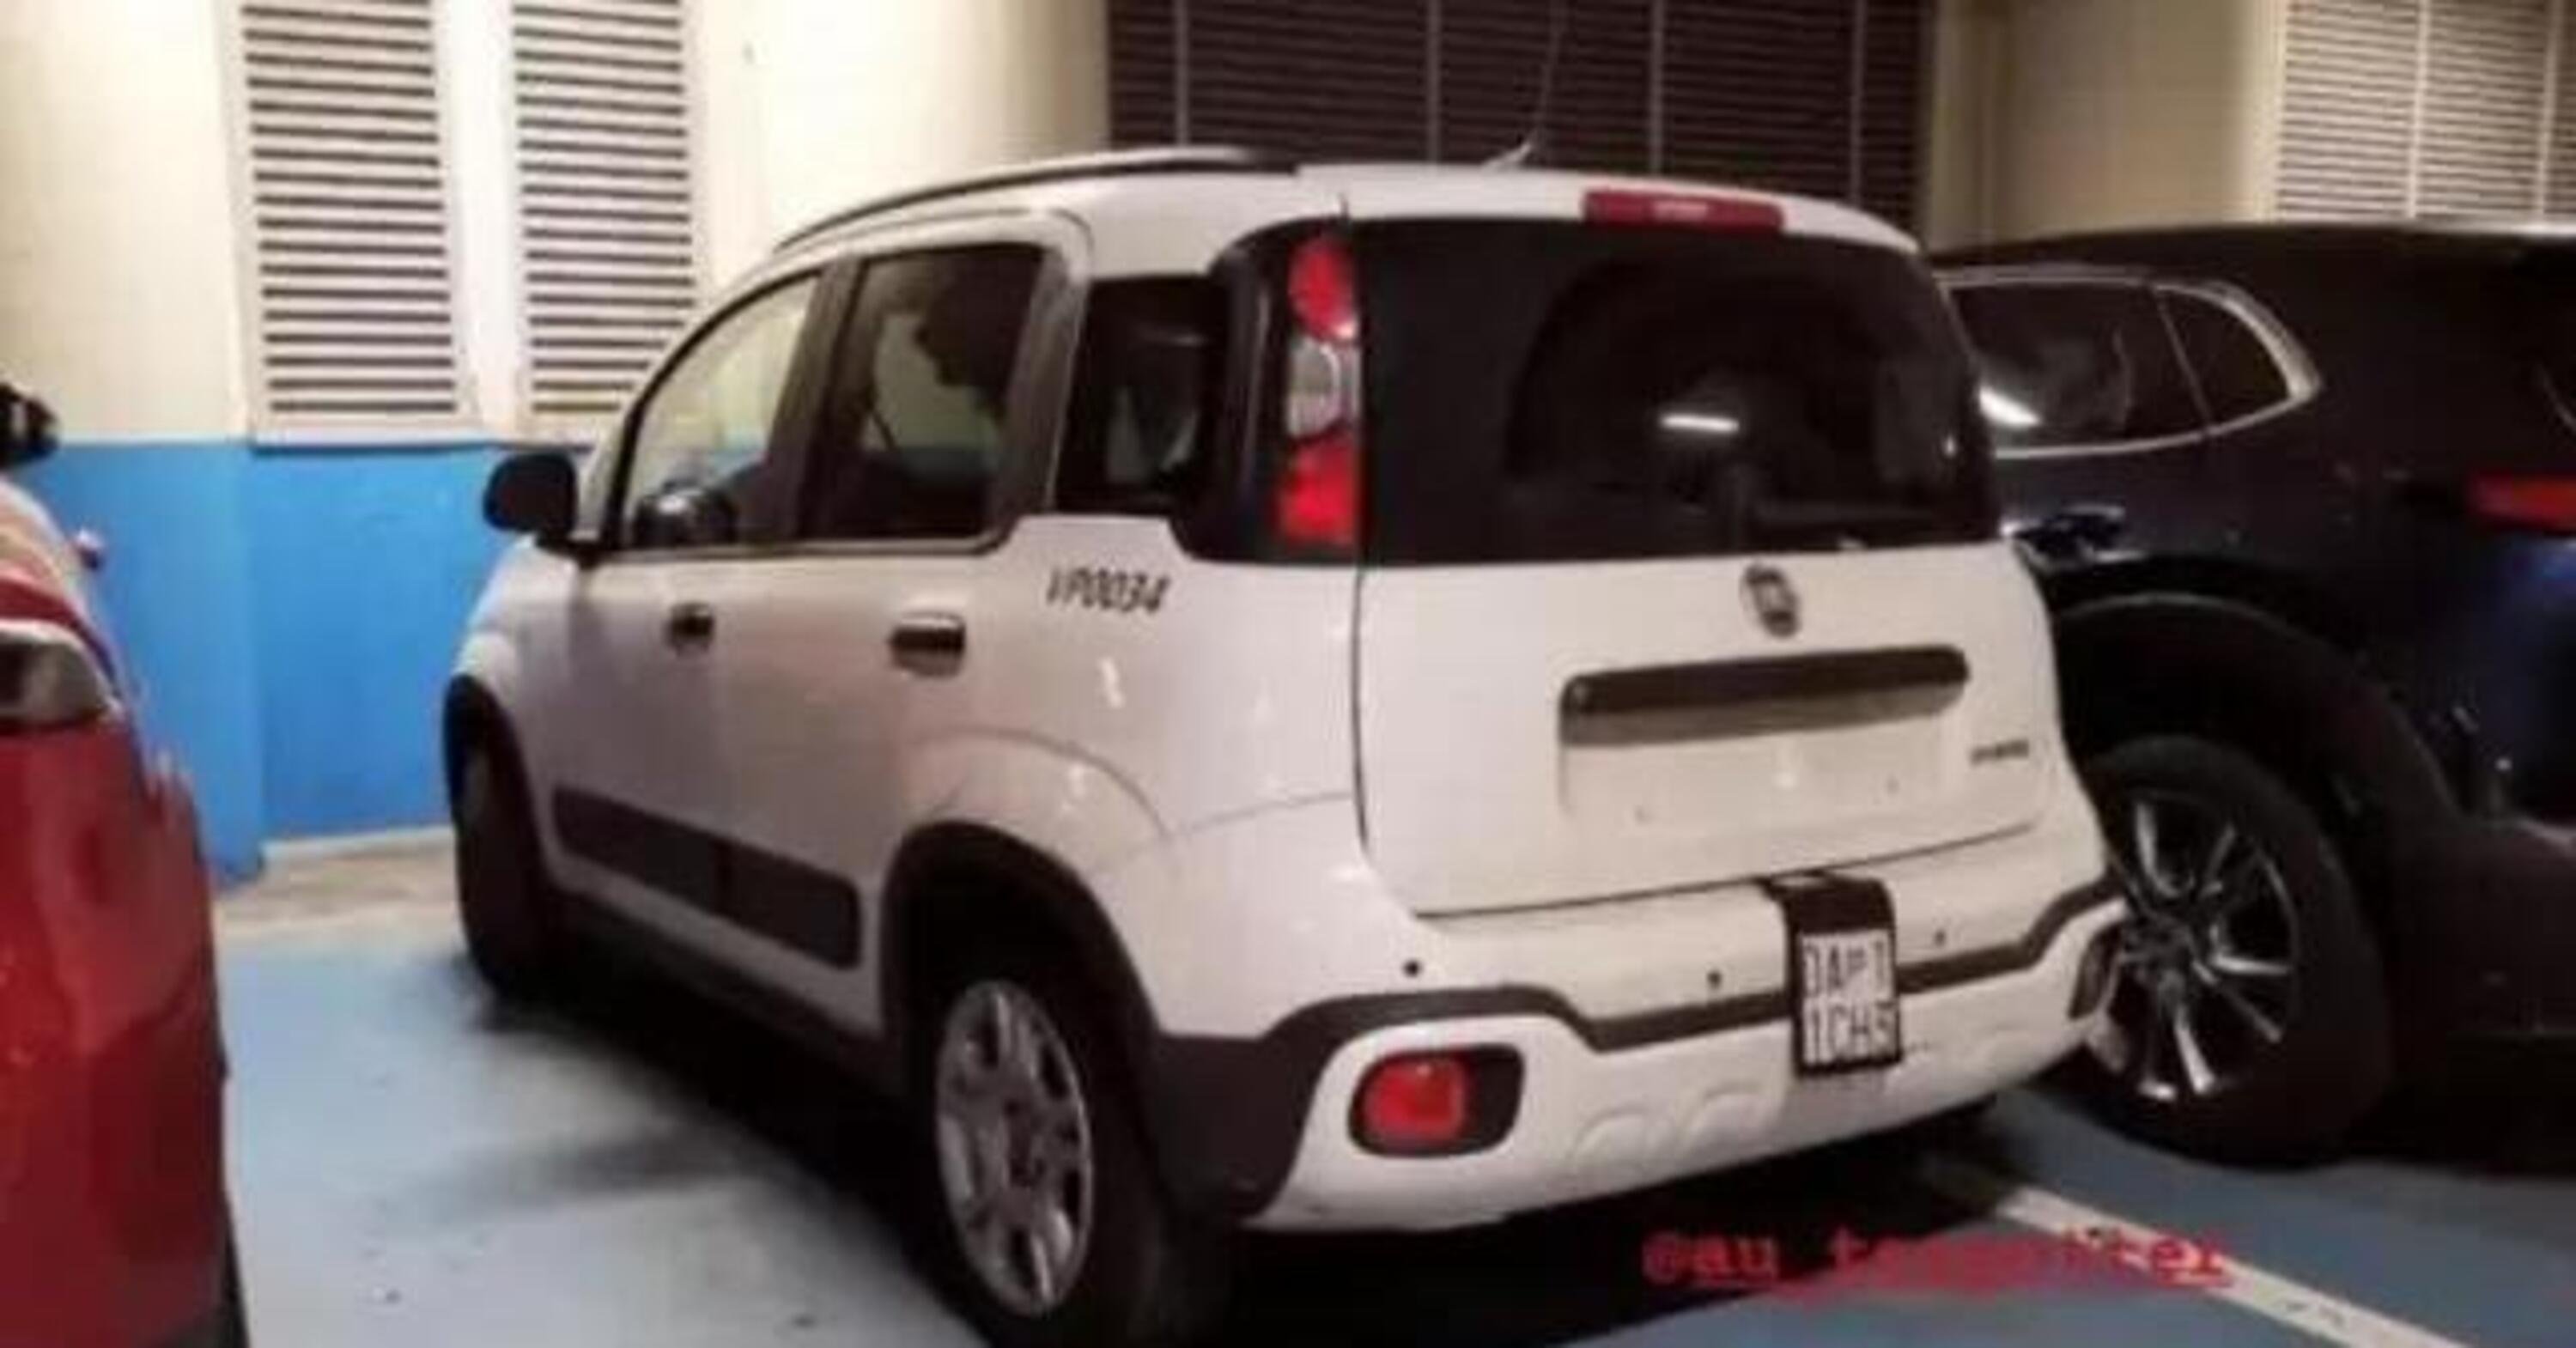 Fiat Panda Veicolo Prototipo 0034: nel 2024 avr&agrave; una nuova plancia